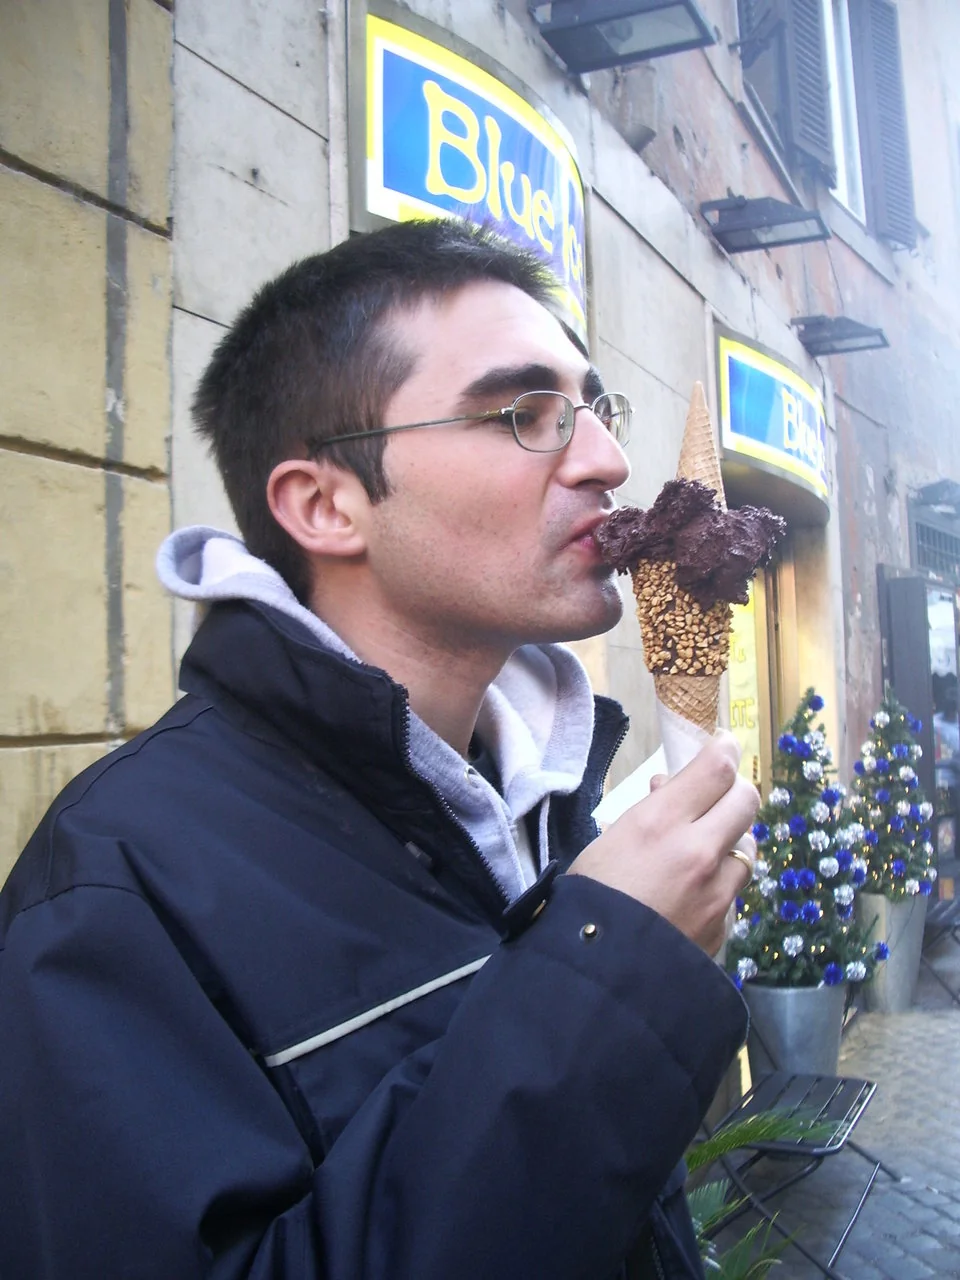 Comiendo un heladito italiano en invierno